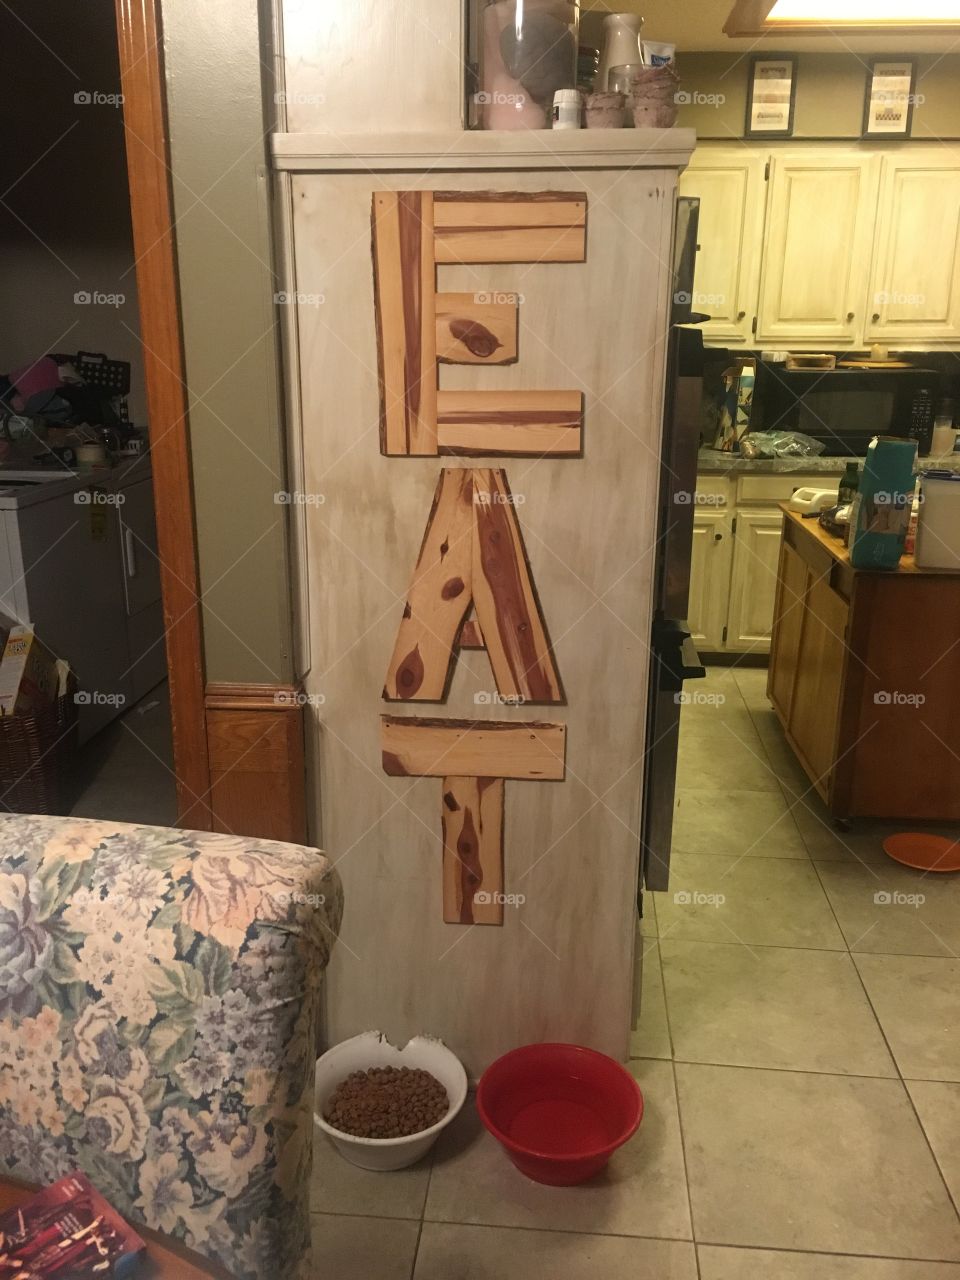 Kitchen sign